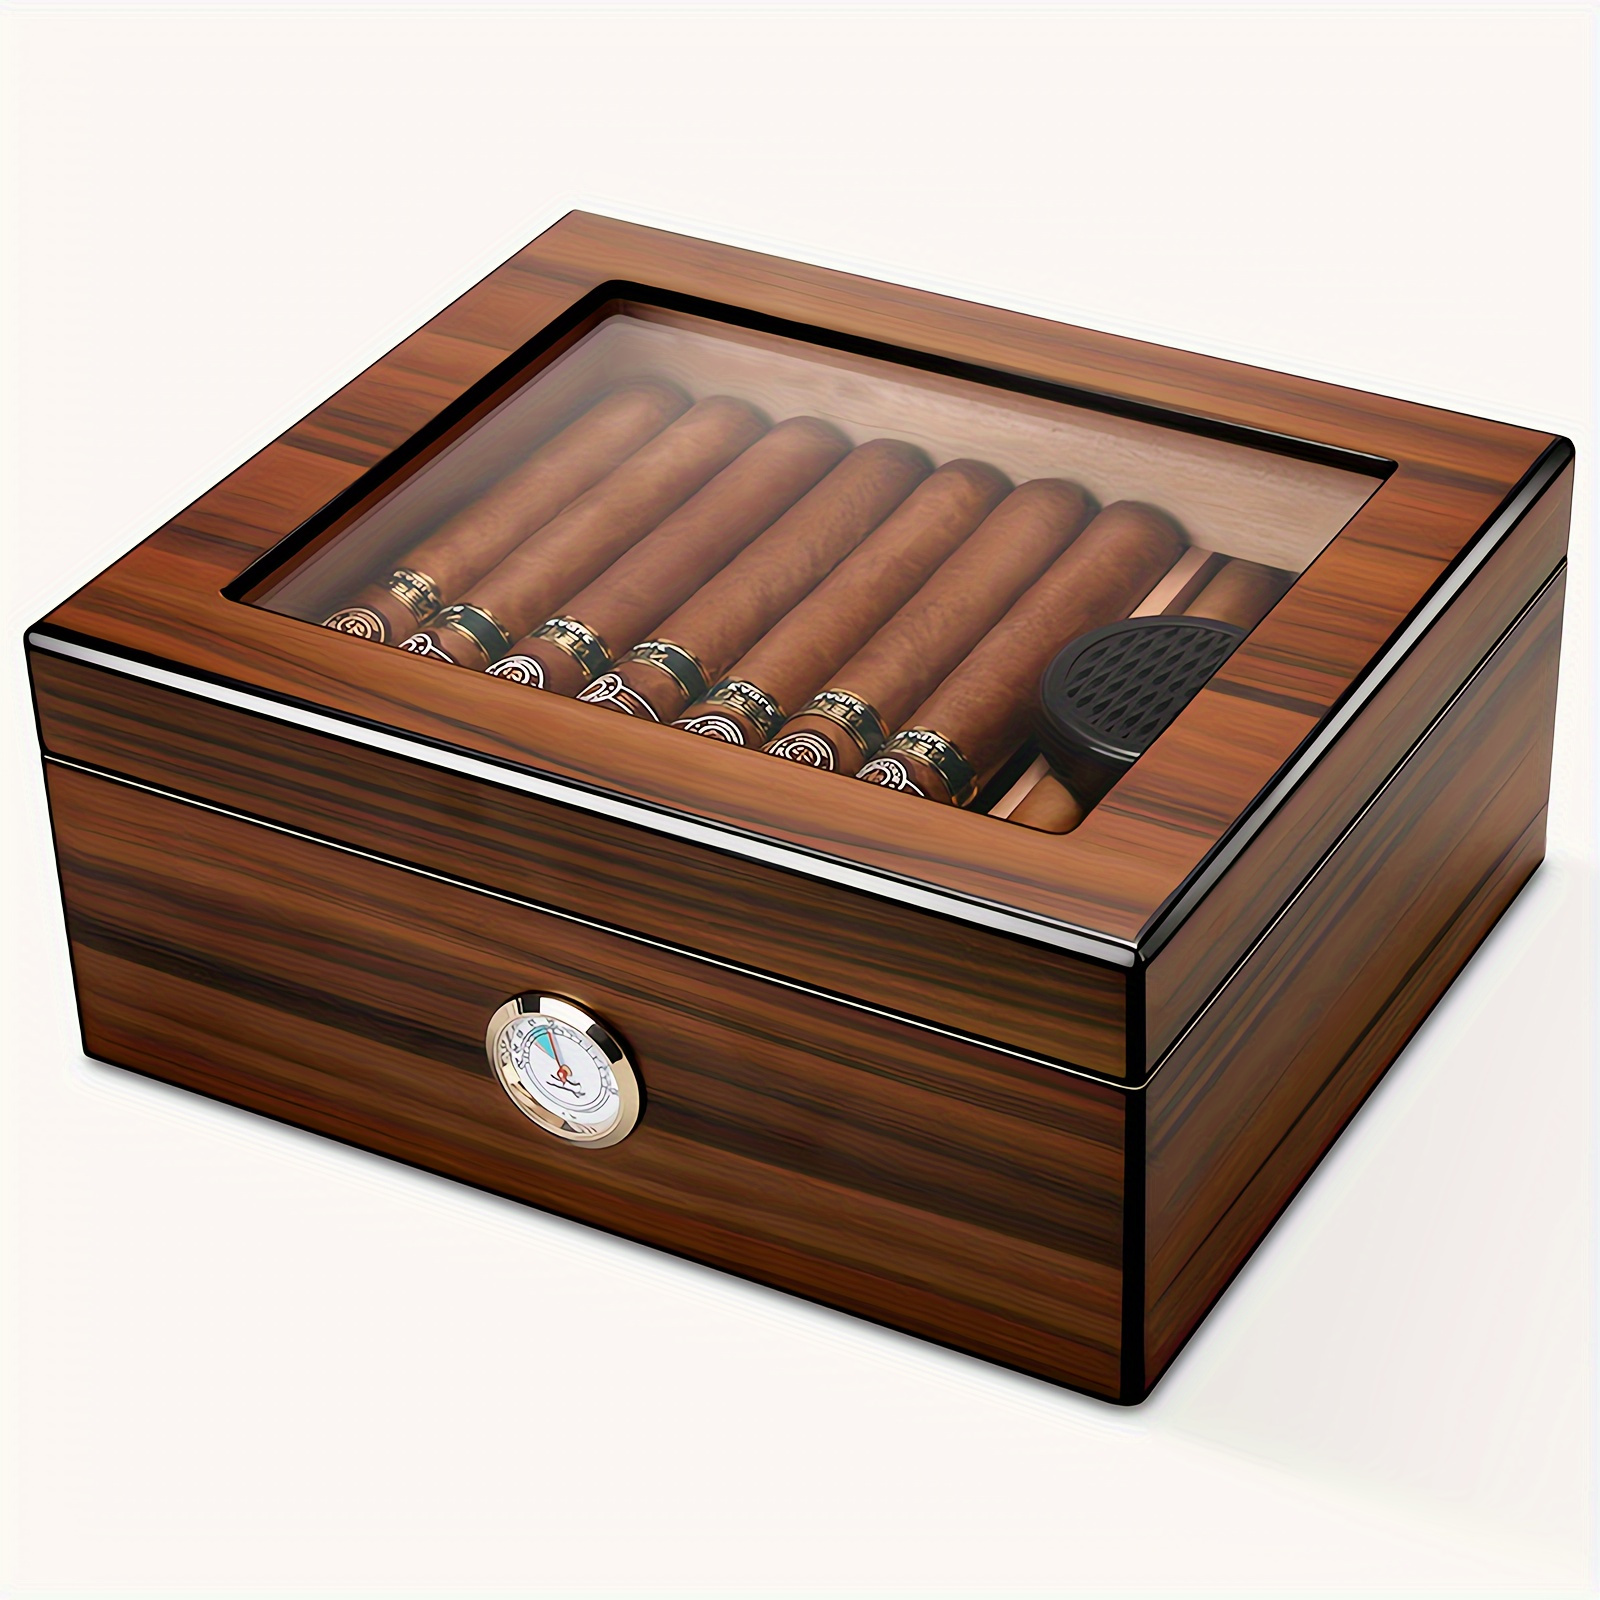 Humidificador de cigarros forrado en madera de cedro marrón con higrómetro,  caja con medidor de humedad